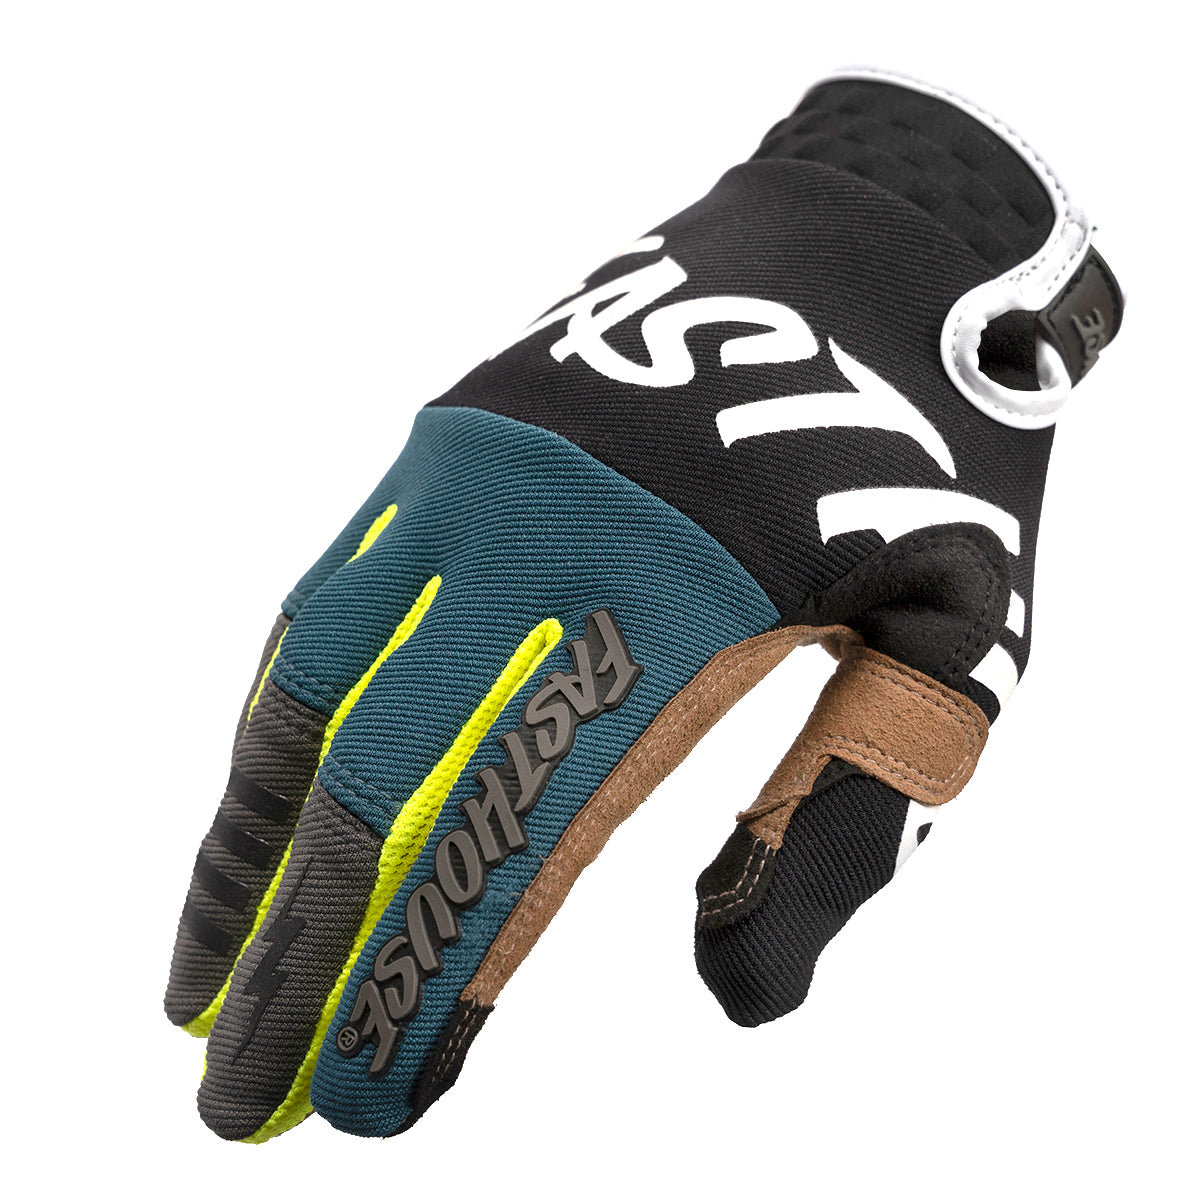 Speed Style Sector Glove - Black/Indigo